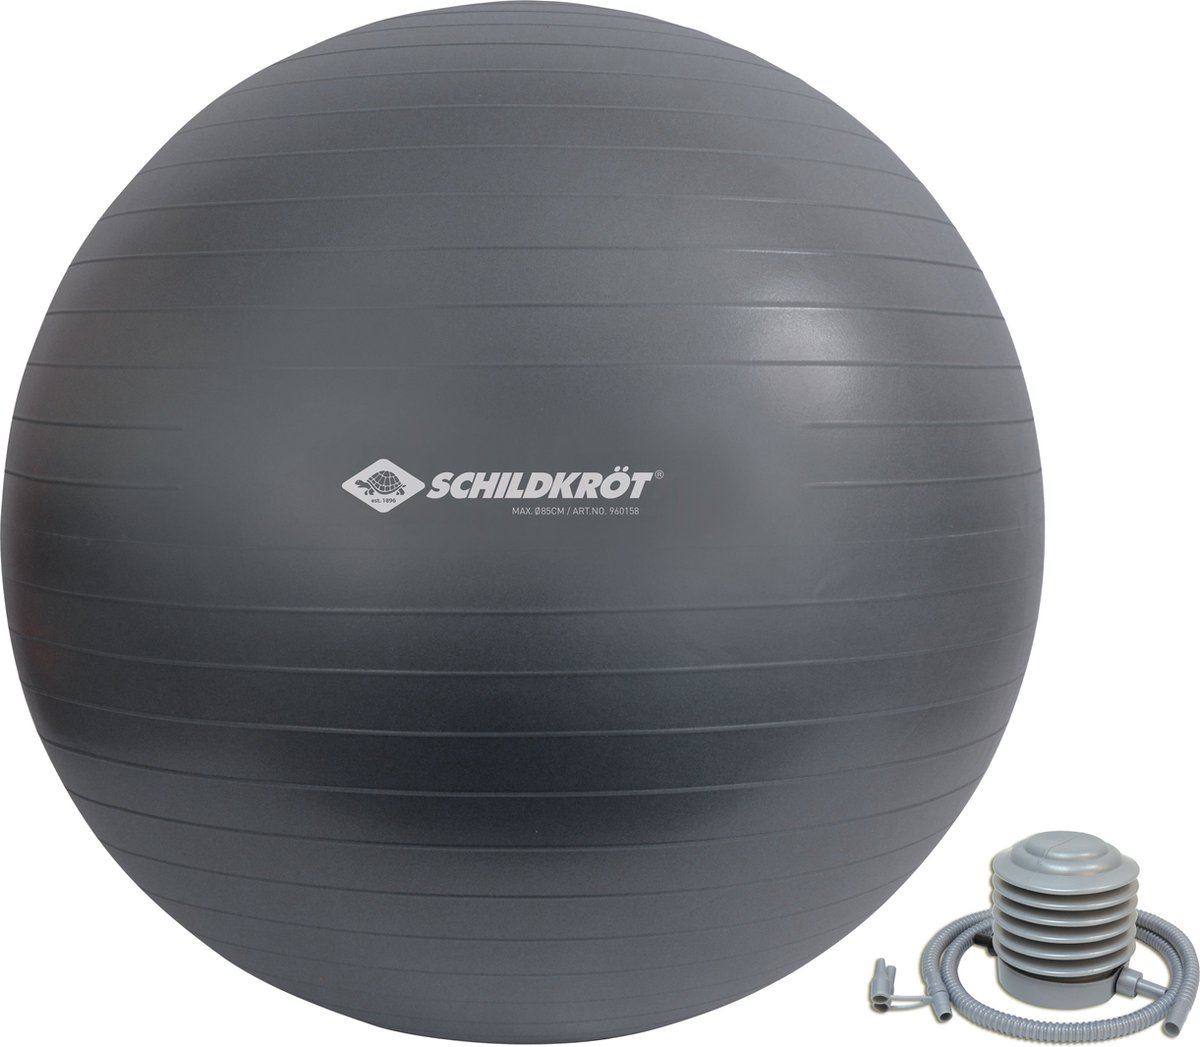 Schildkröt gymnastiekbal / fitnessbal, 85 cm doorsnede, grijs.